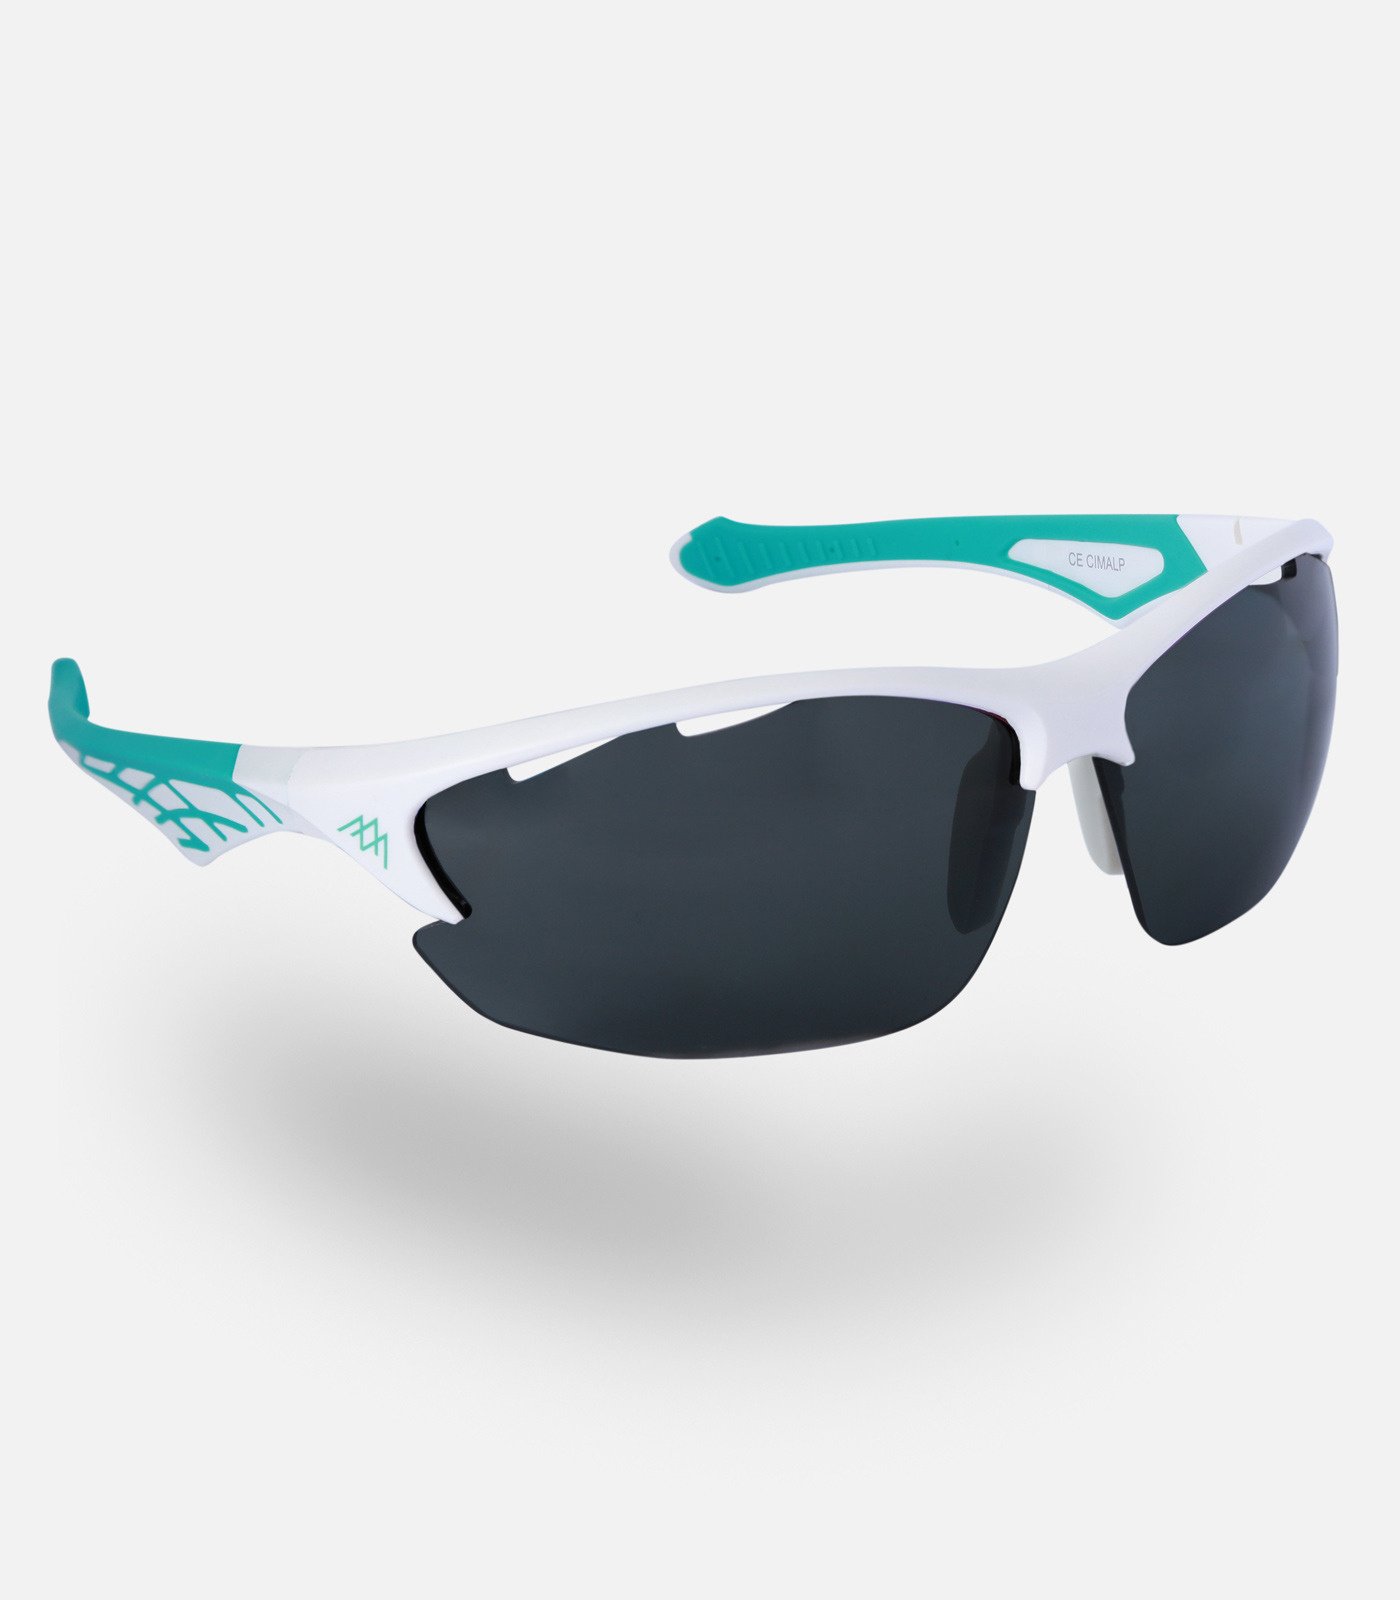 Gafas outdoor con lentes polarizadas de cat.3 | Cimalp